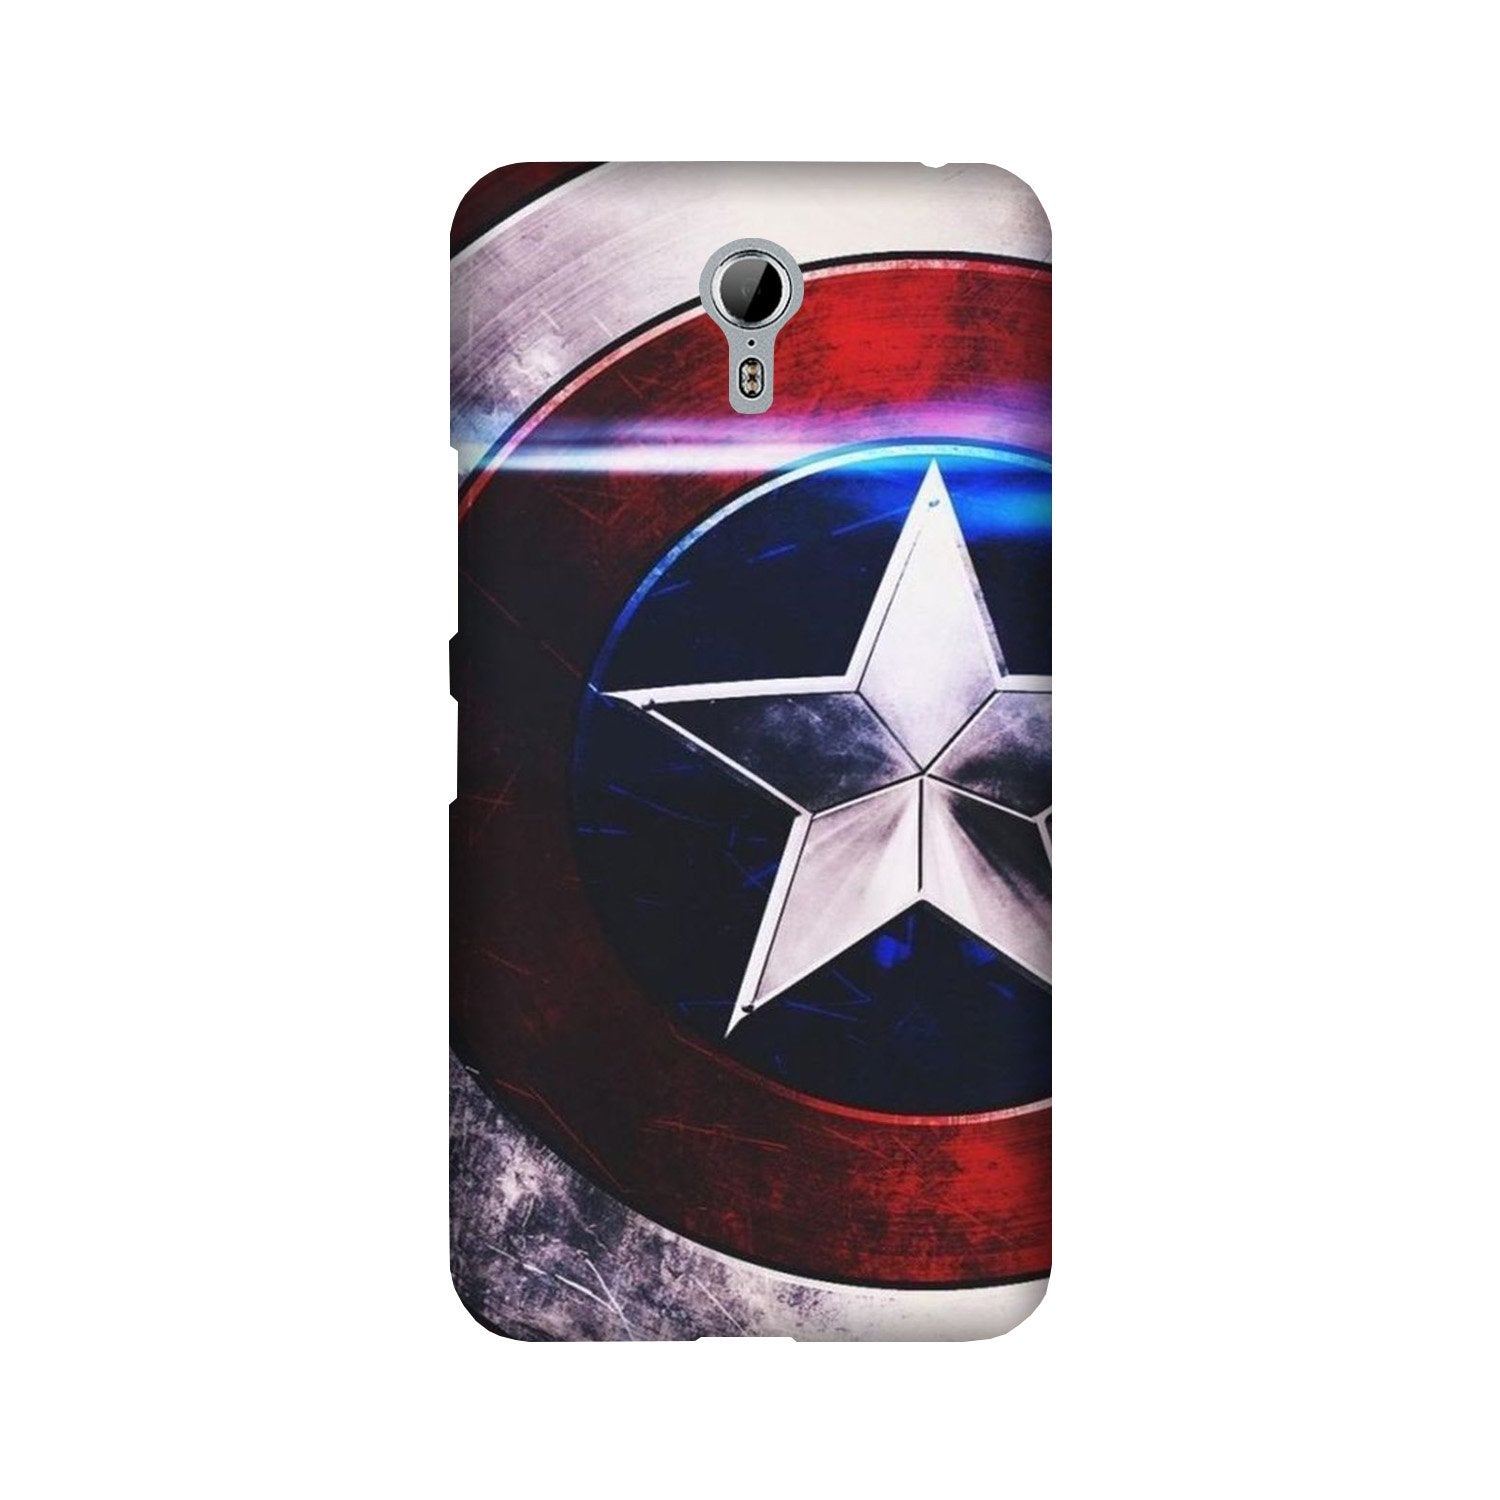 Captain America Shield Case for Lenovo Zuk Z1 (Design No. 250)